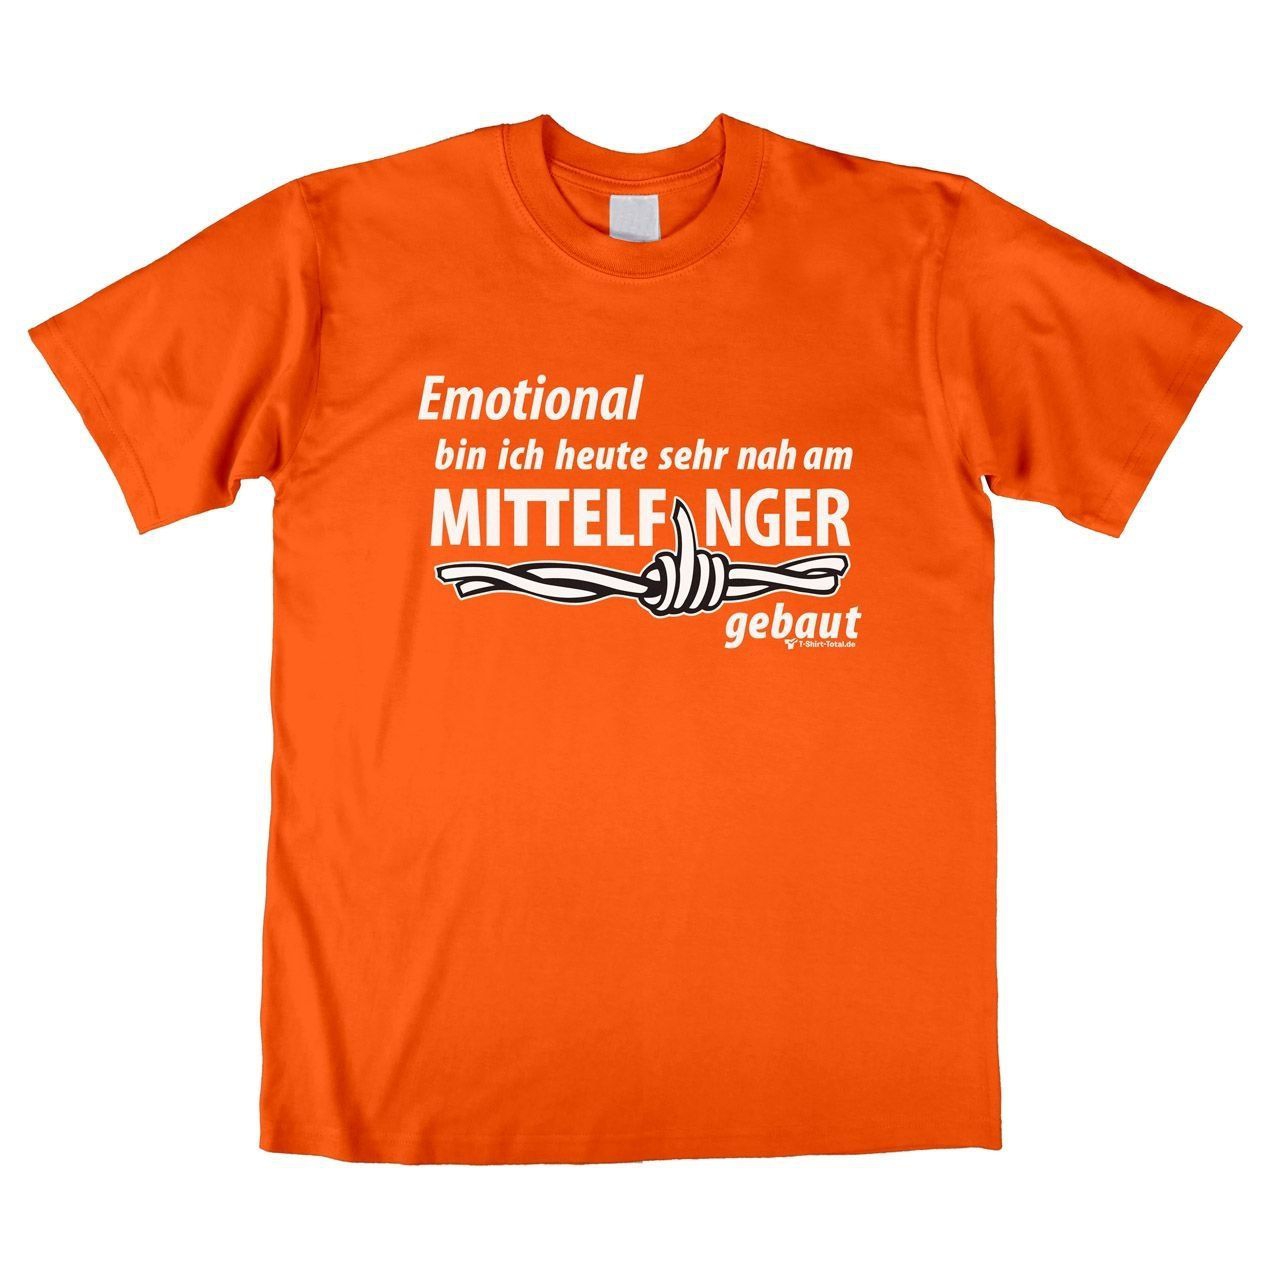 Mittelfinger Unisex T-Shirt orange Extra Large